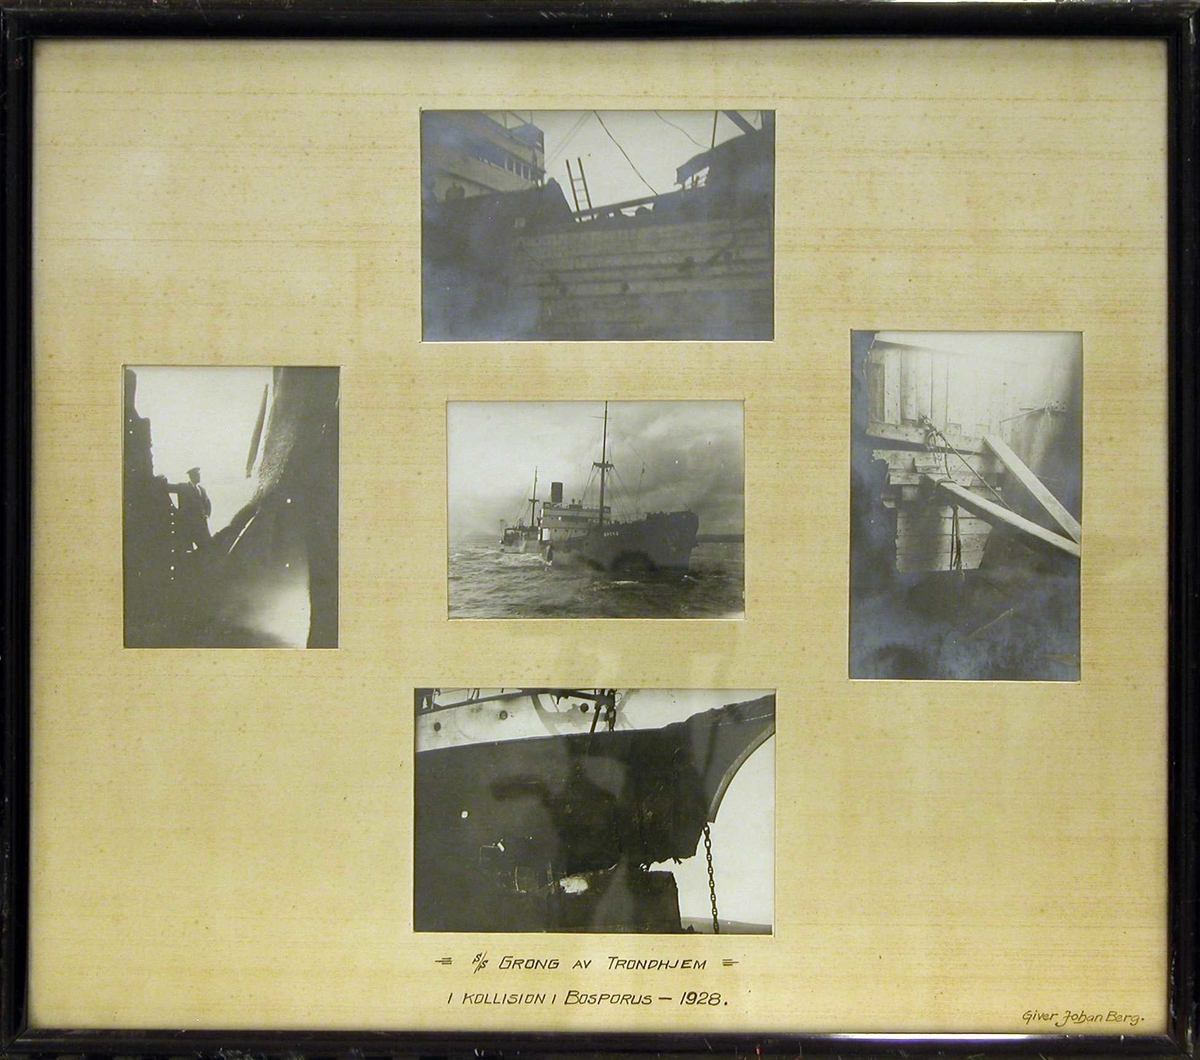 5 fotografier av S/S "Grong" som har kollidert i Bosporus, Tyrkia 1928.